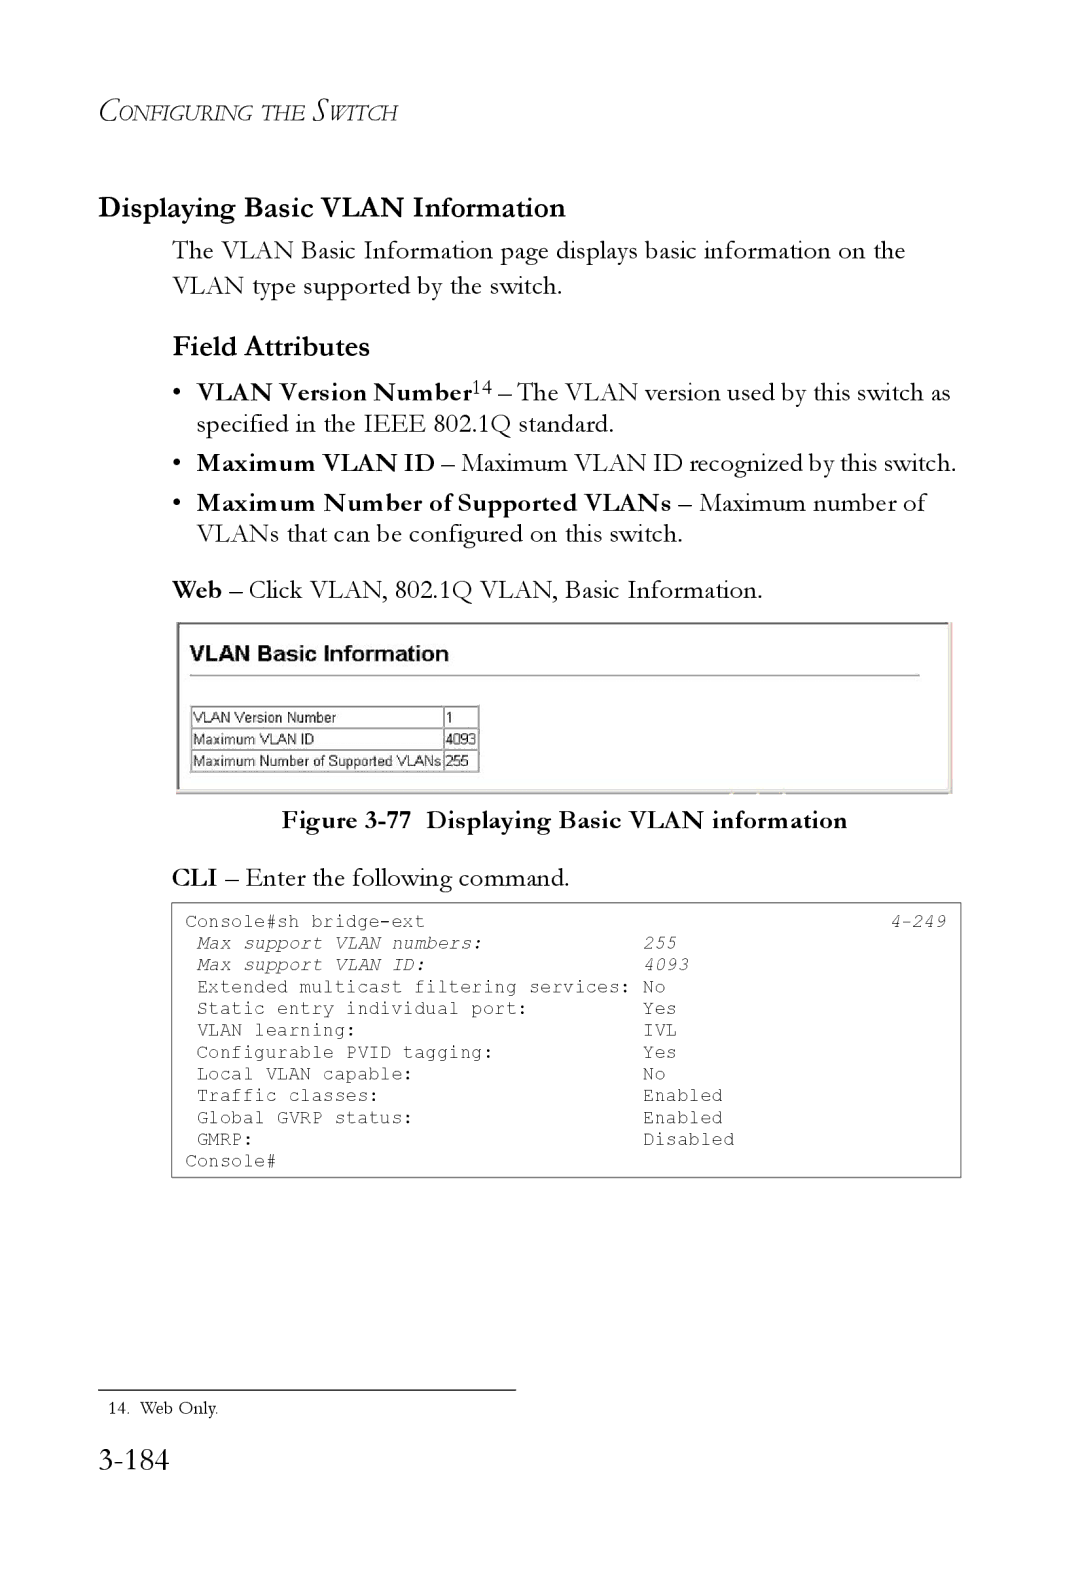 SMC Networks SMC6824M manual 184, Displaying Basic Vlan Information, Web Click VLAN, 802.1Q VLAN, Basic Information 